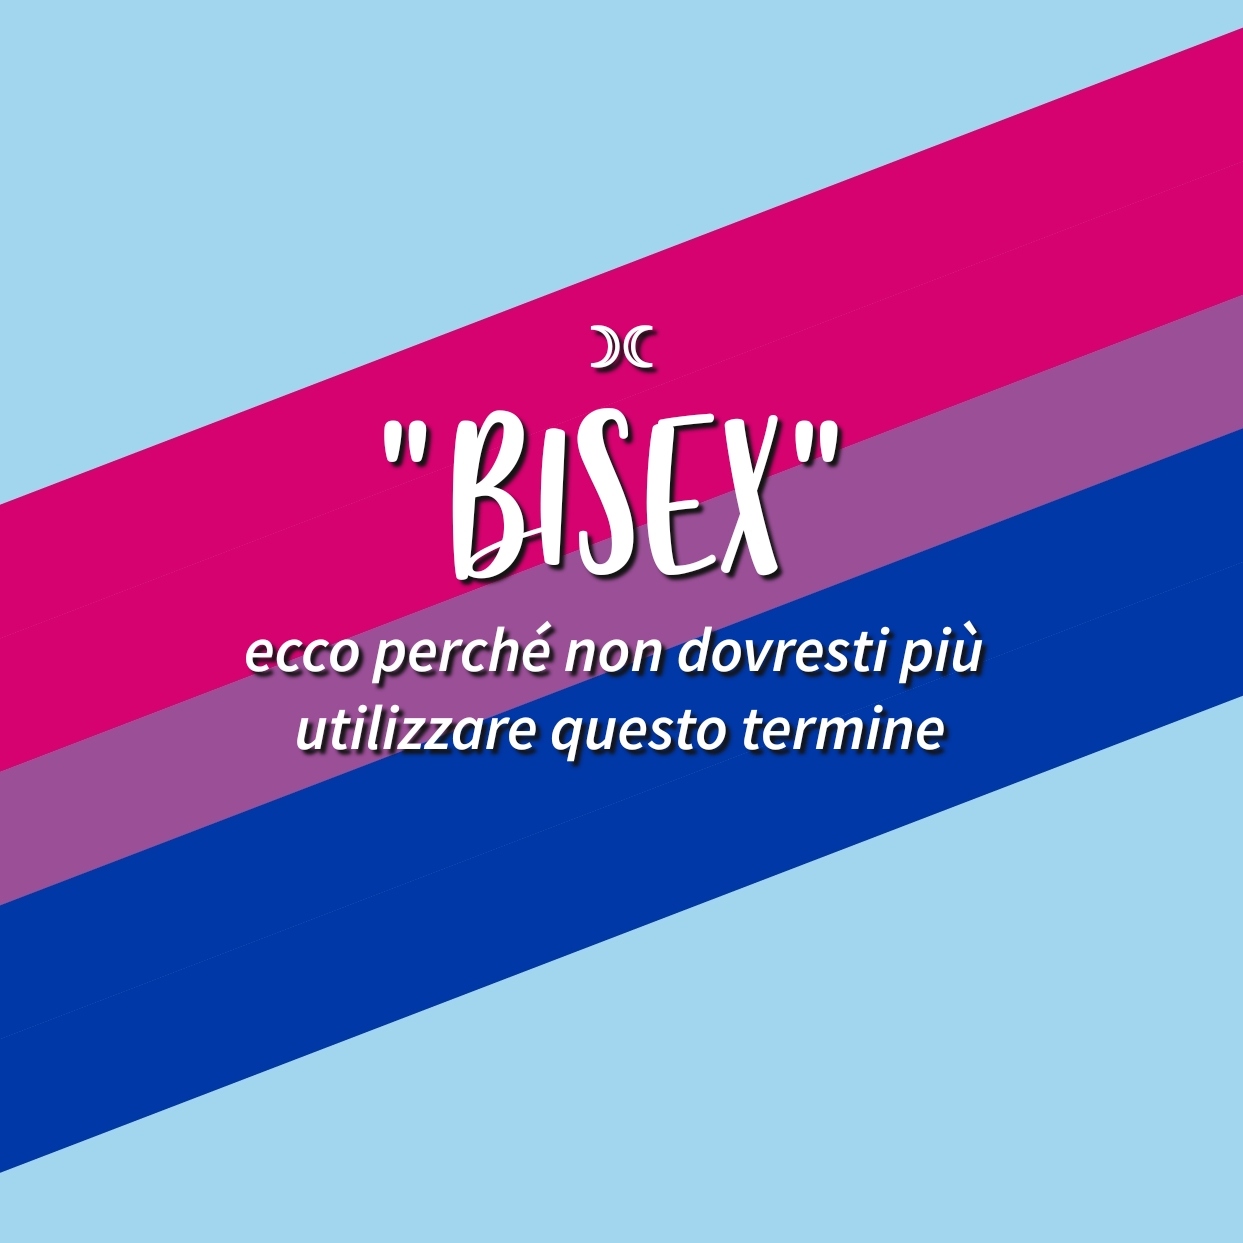 “Bisex”: ecco perché non dovresti più utilizzare questo termine